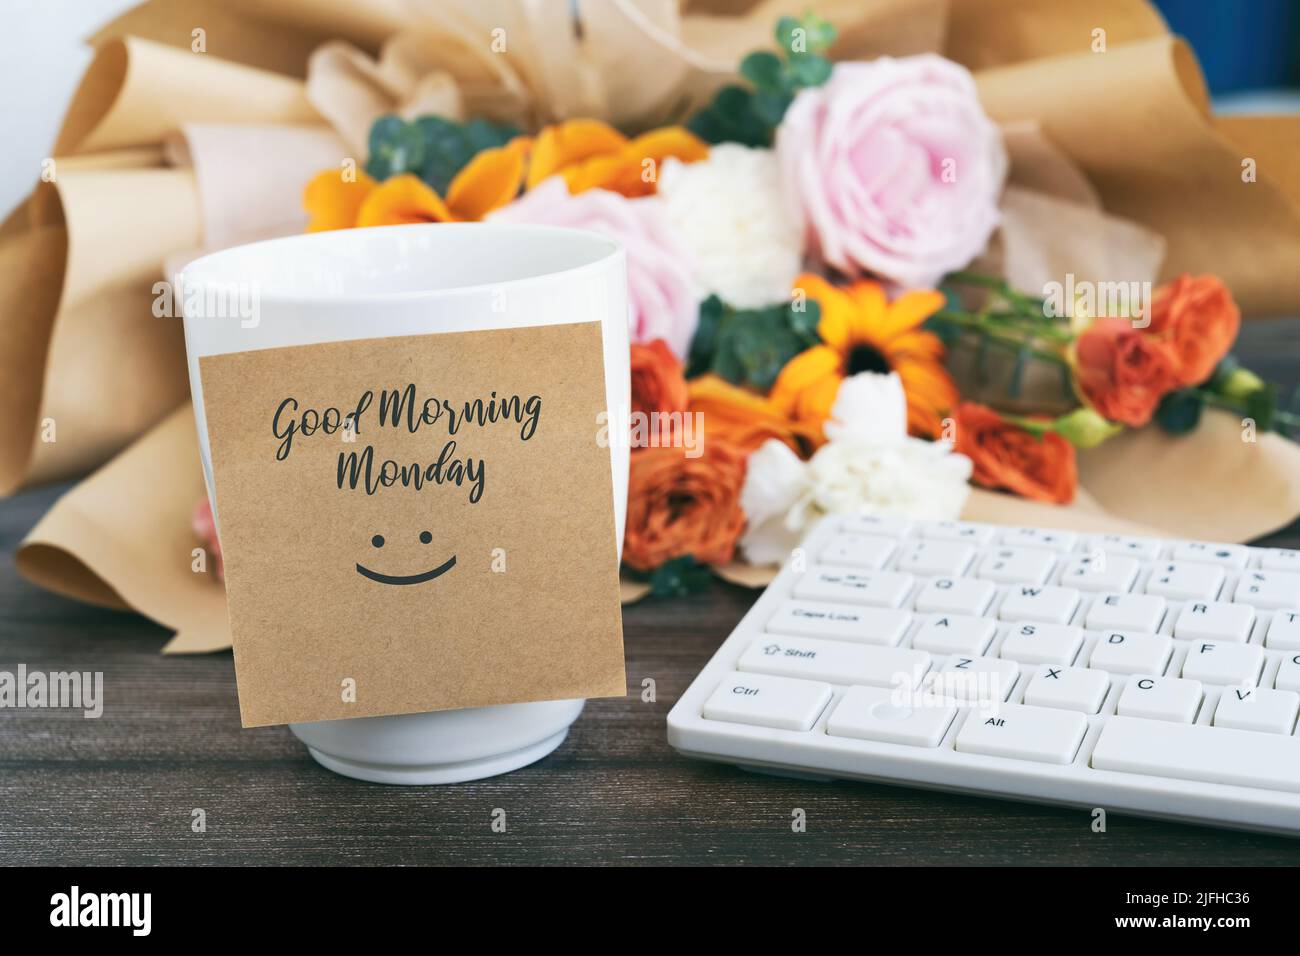 Buongiorno Lunedi saluto su una nota adesiva con una tazza di caffè Foto Stock